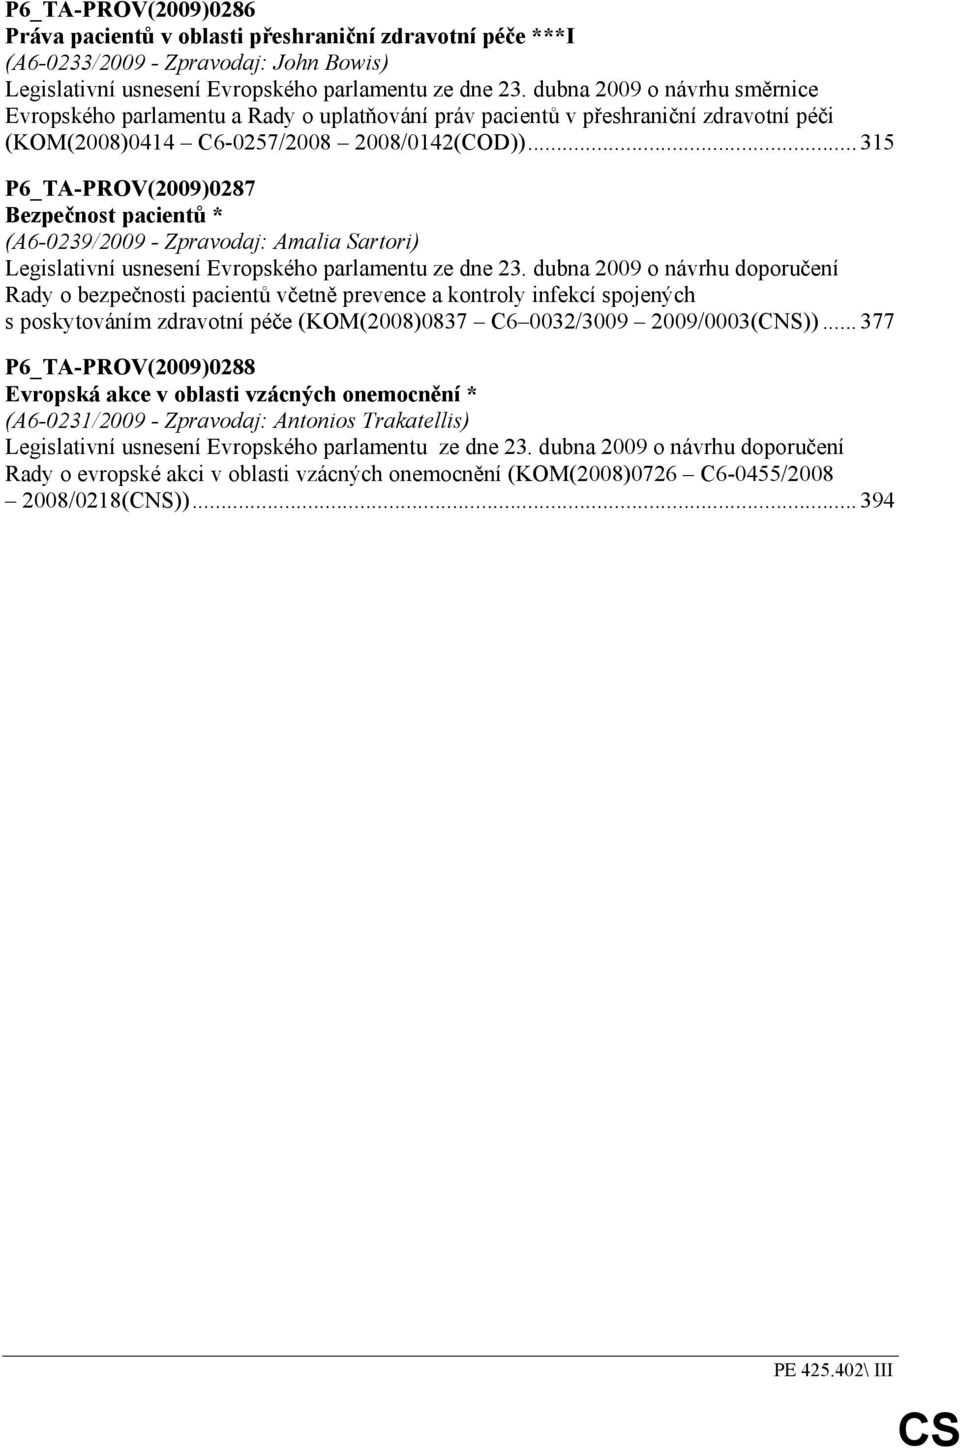 .. 315 P6_TA-PROV(2009)0287 Bezpečnost pacientů * (A6-0239/2009 - Zpravodaj: Amalia Sartori) Legislativní usnesení Evropského parlamentu ze dne 23.